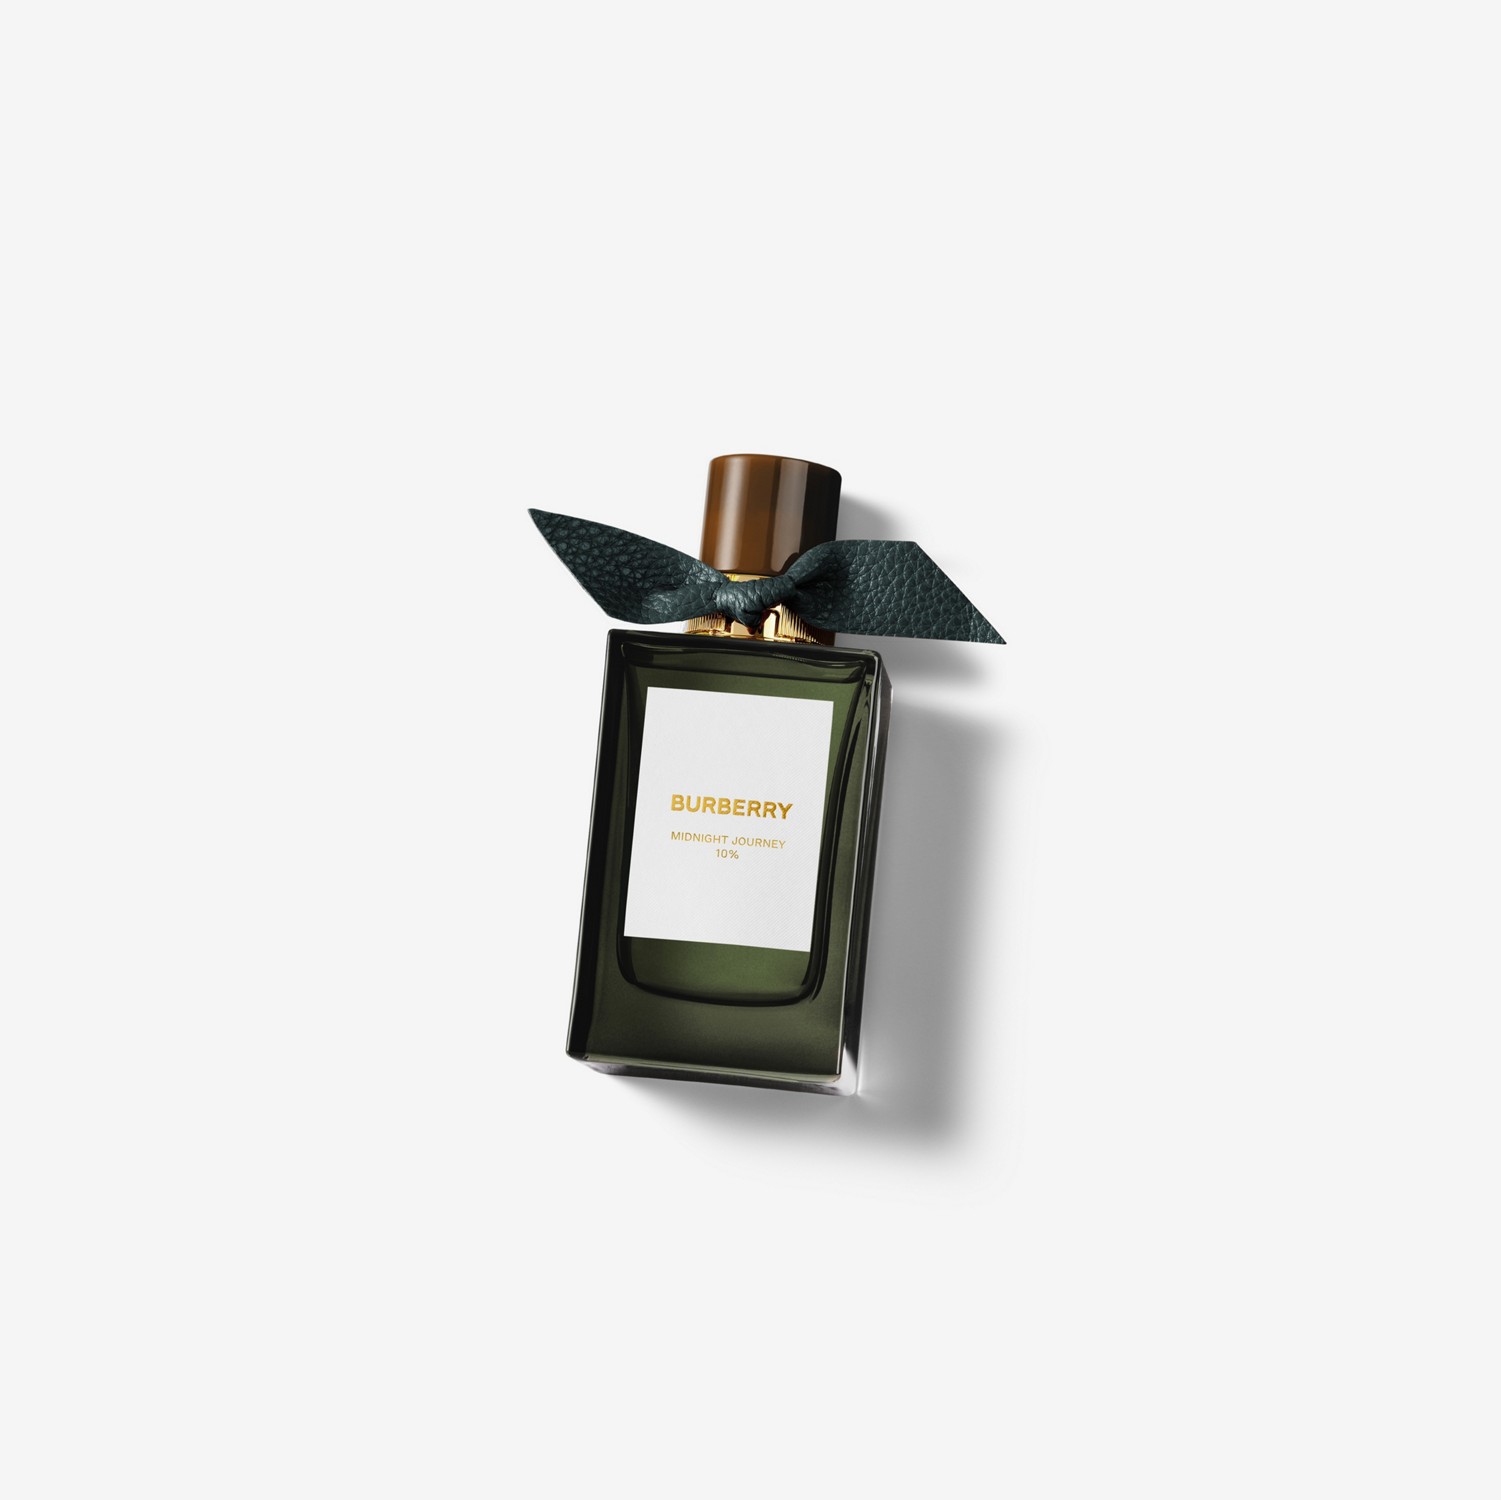 Burberry Signatures Eau de Parfum de 100 ml - Midnight Journey | Burberry® oficial